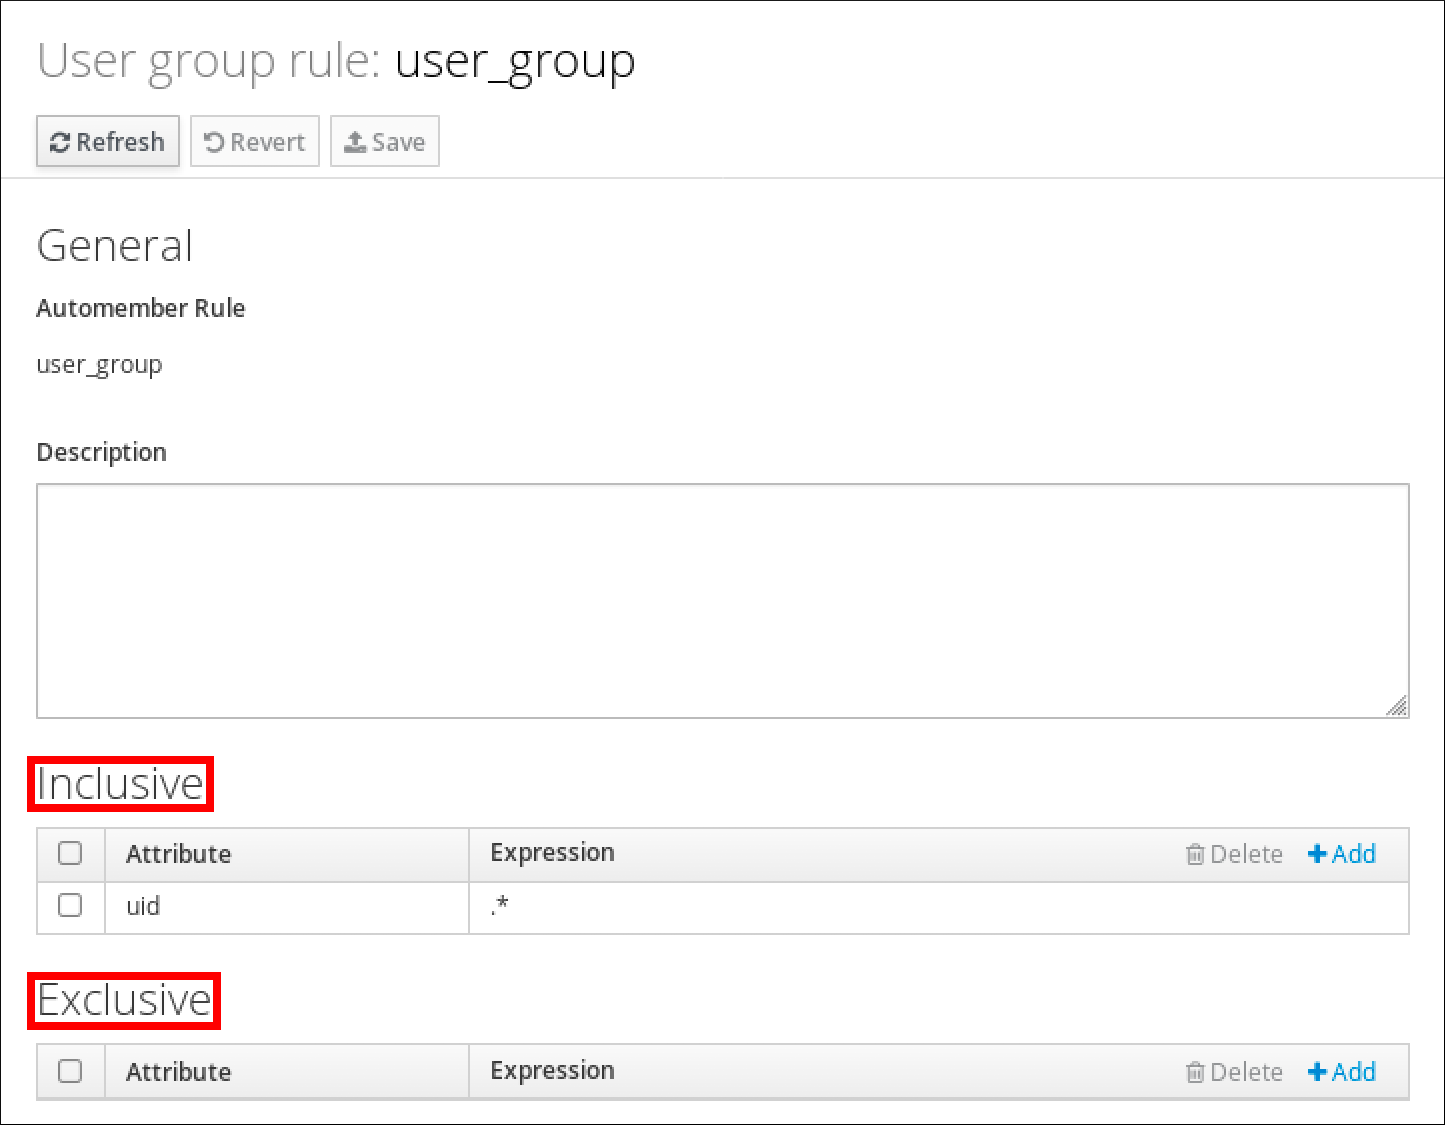 사용자 그룹 규칙 "user_group"의 세부 정보 스크린샷입니다. Automember 규칙의 이름과 "설명"을 표시하는 "일반" 섹션이 있습니다. 하단에는 "Attribute" 및 "Expression"라는 열이 있는 표를 표시하는 "완전" 섹션이 있습니다. 이 표에는 uid가 속성 및 .* 식인 하나의 항목이 있습니다. 맨 아래에는 "전체" 테이블의 구조와 일치하는 테이블이 포함된 "Exclusive" 섹션이 있지만 항목이 없습니다.